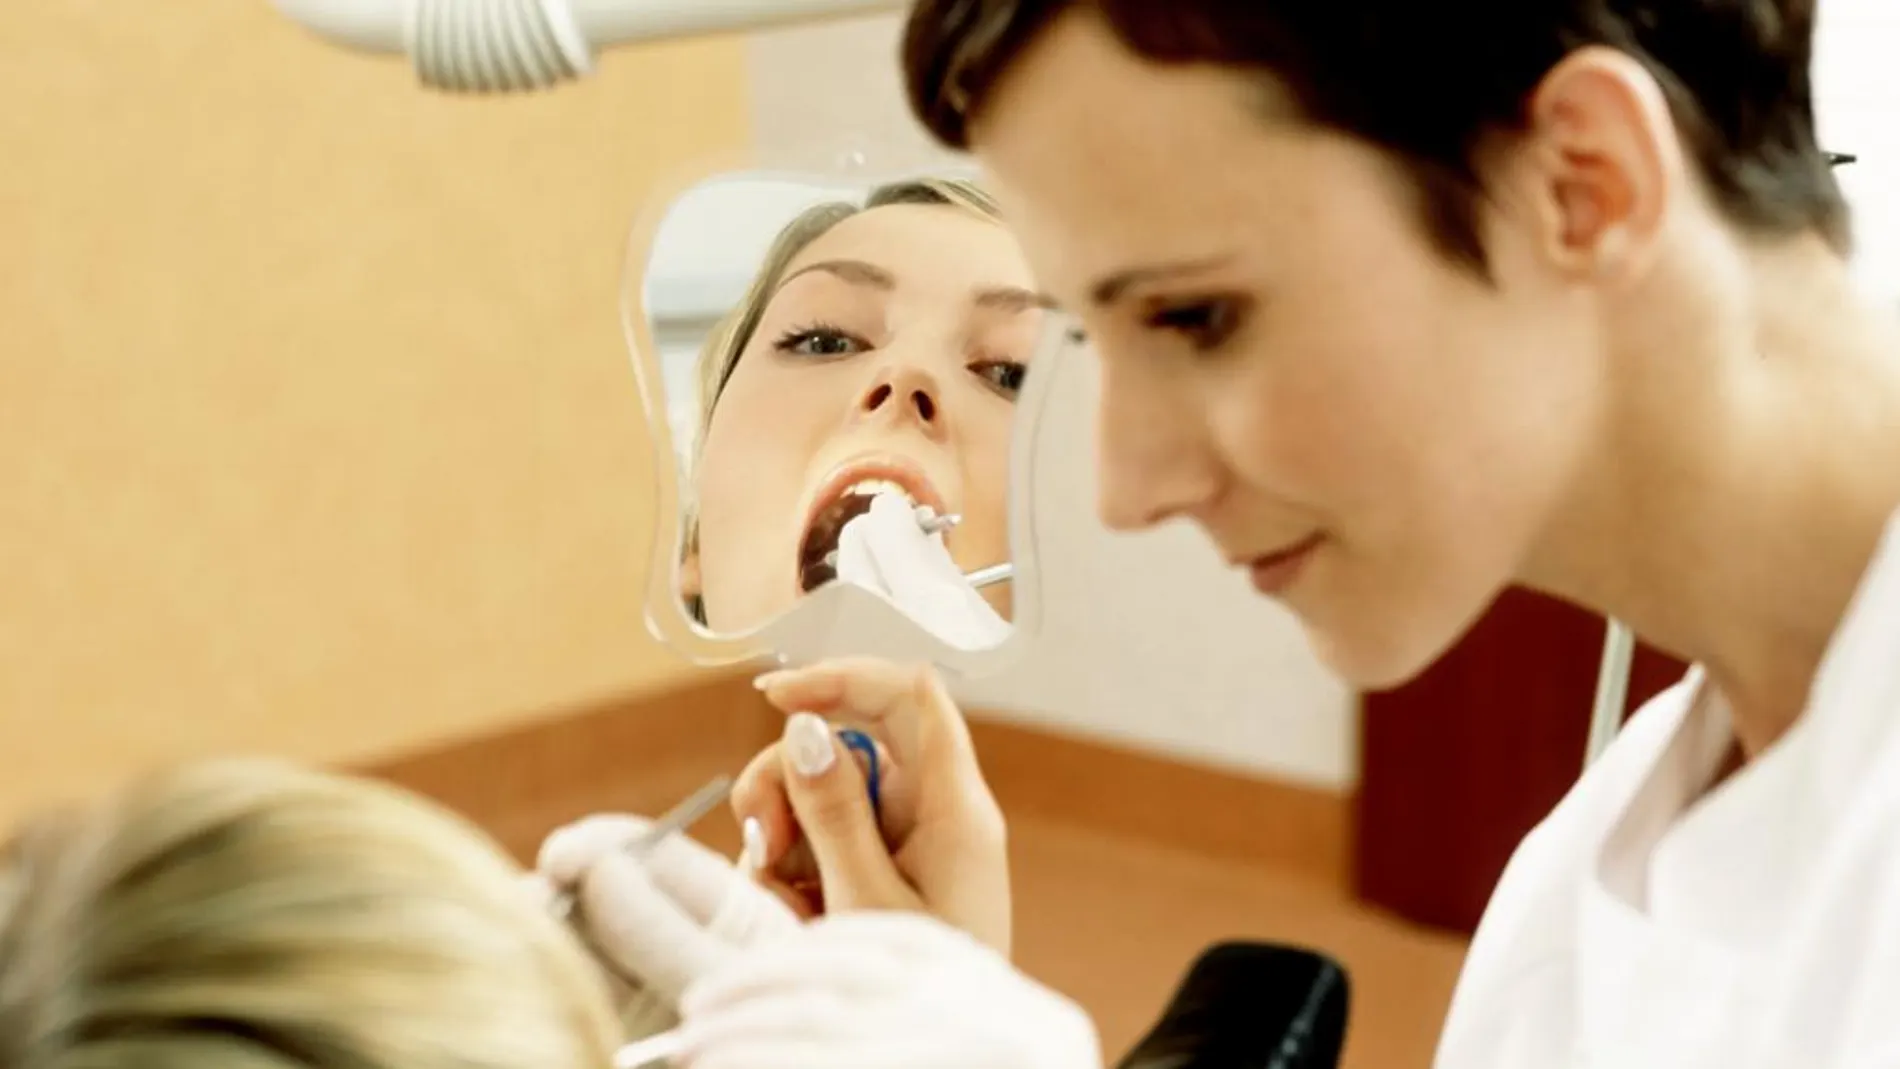 La nueva economía llega al sector odontológico